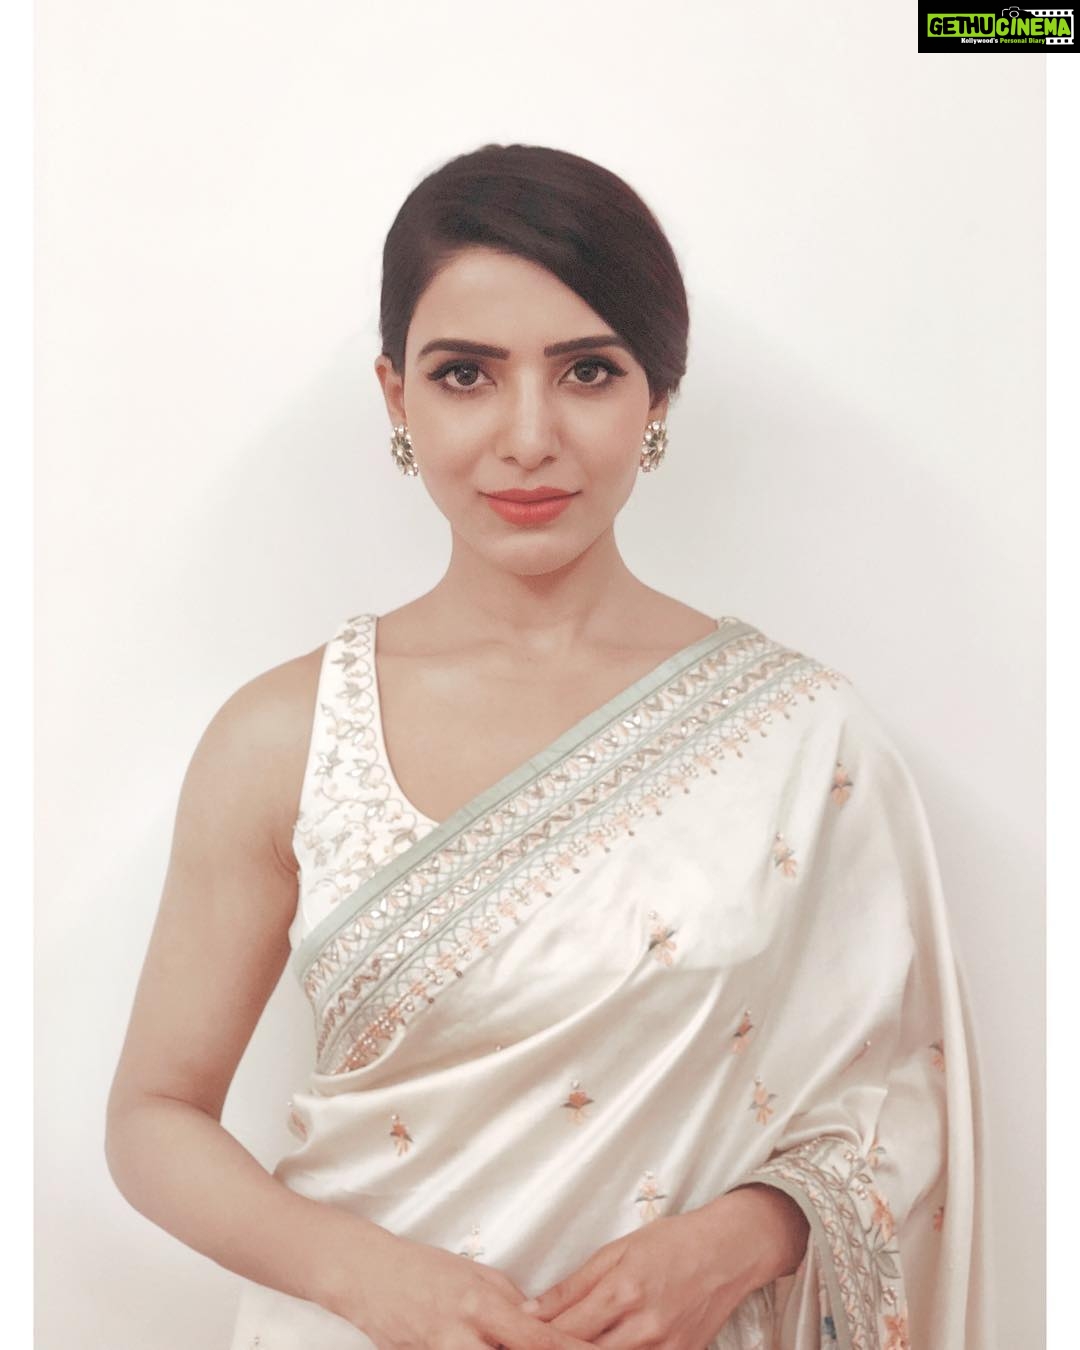 Actress Samantha Akkineni 2018 Latest Gallery - Gethu Cinema